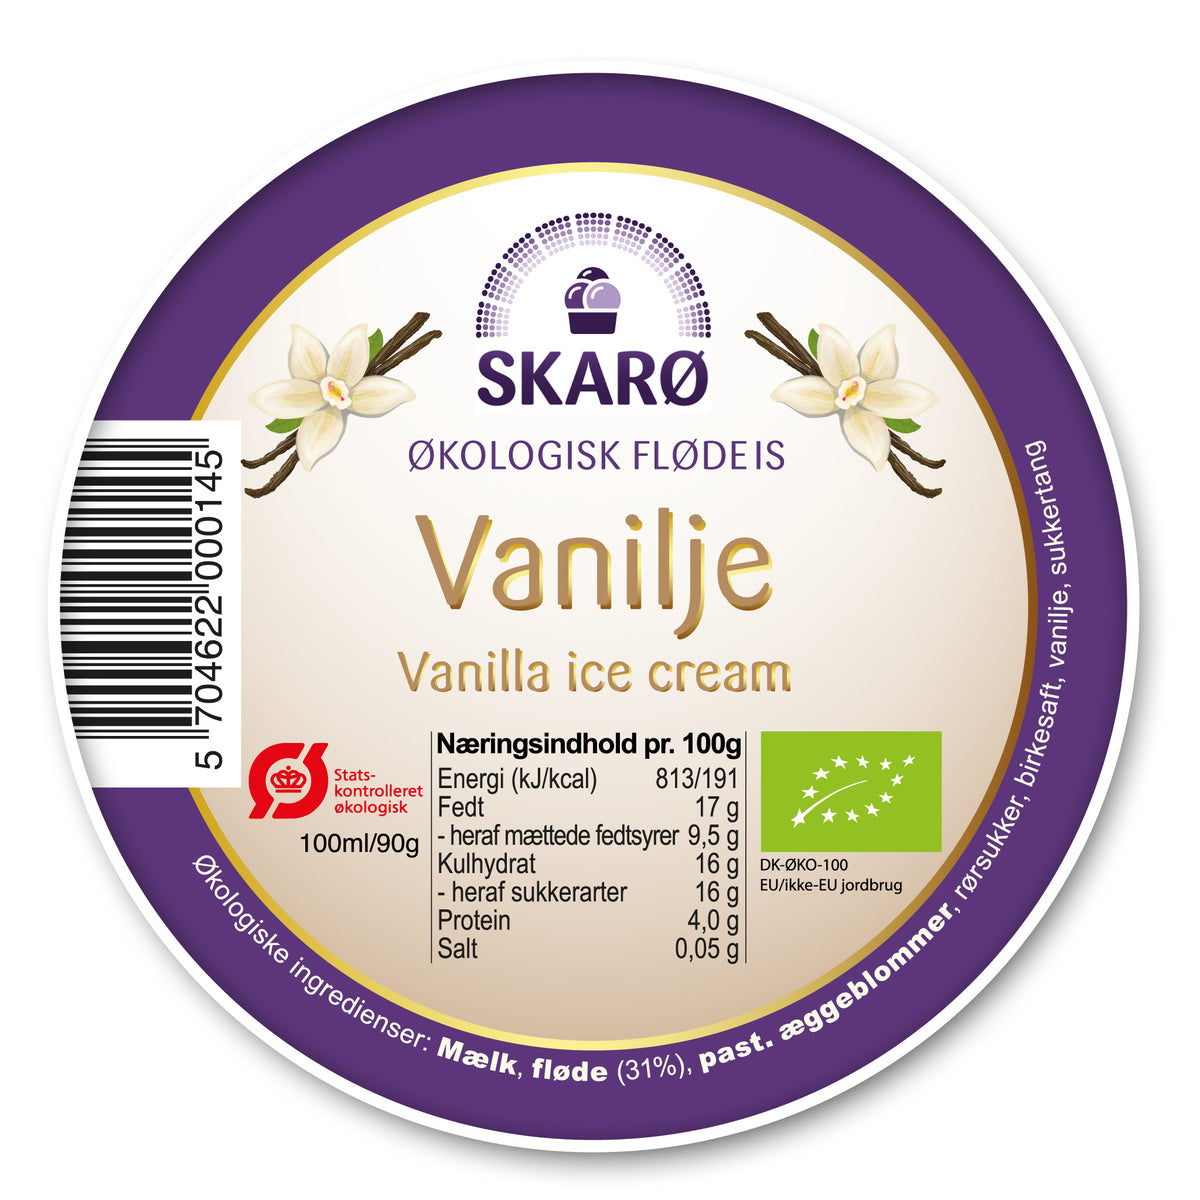 Økologisk Vanilje gourmetflødeis fra Skarø